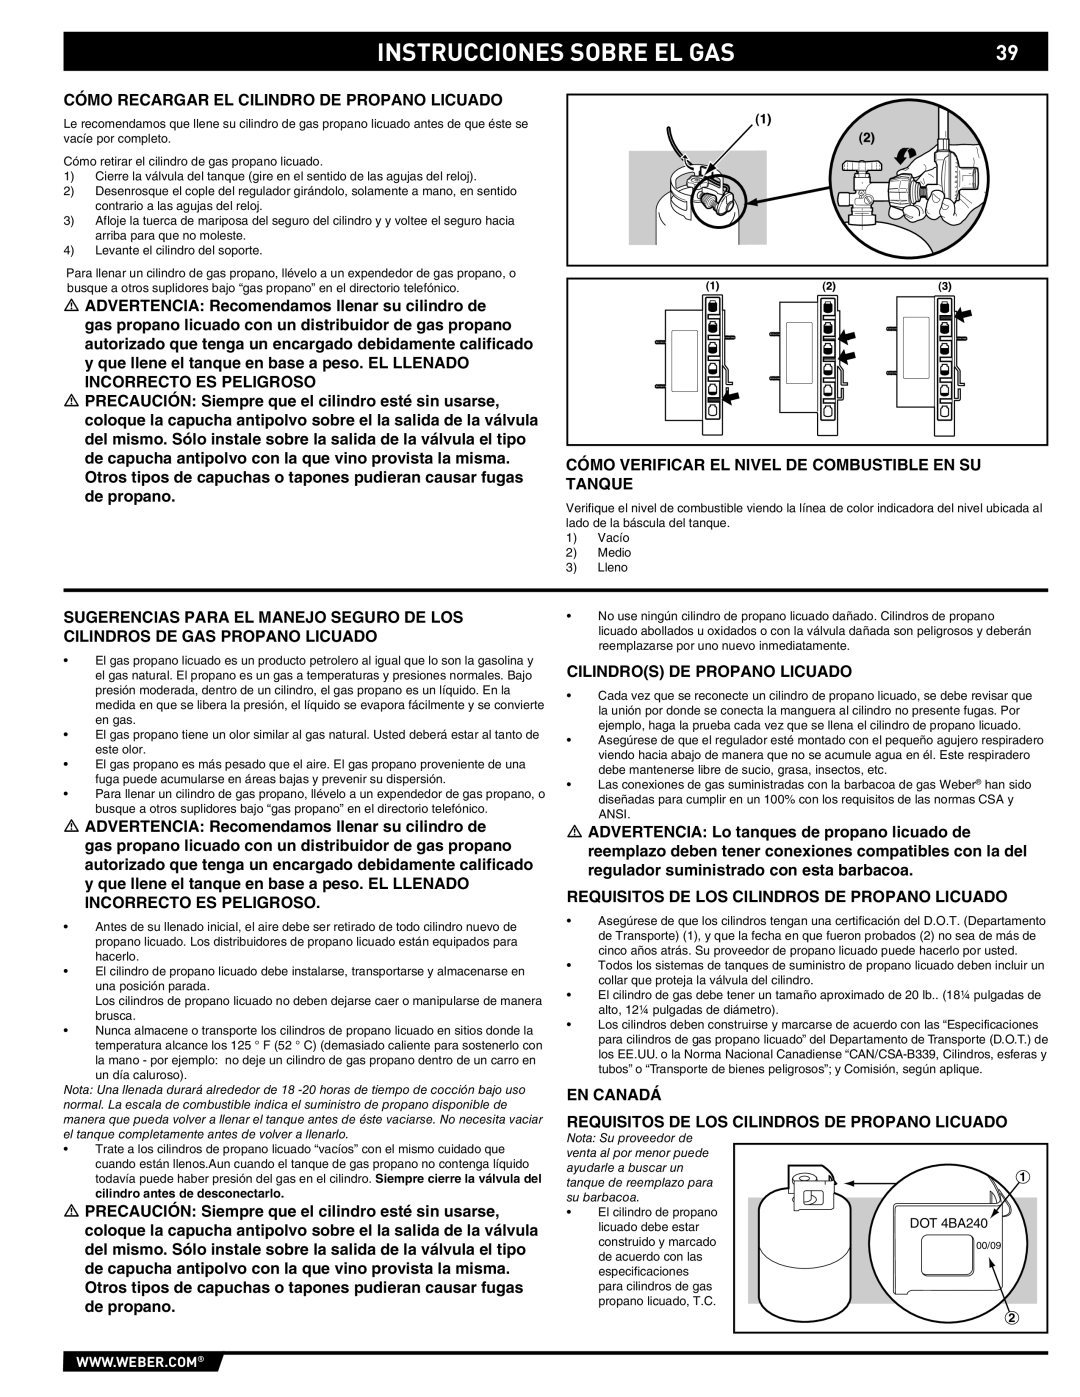 Summit E/S-620/650 manual Cómo Recargar EL Cilindro DE Propano Licuado, Cómo Verificar EL Nivel DE Combustible EN SU Tanque 